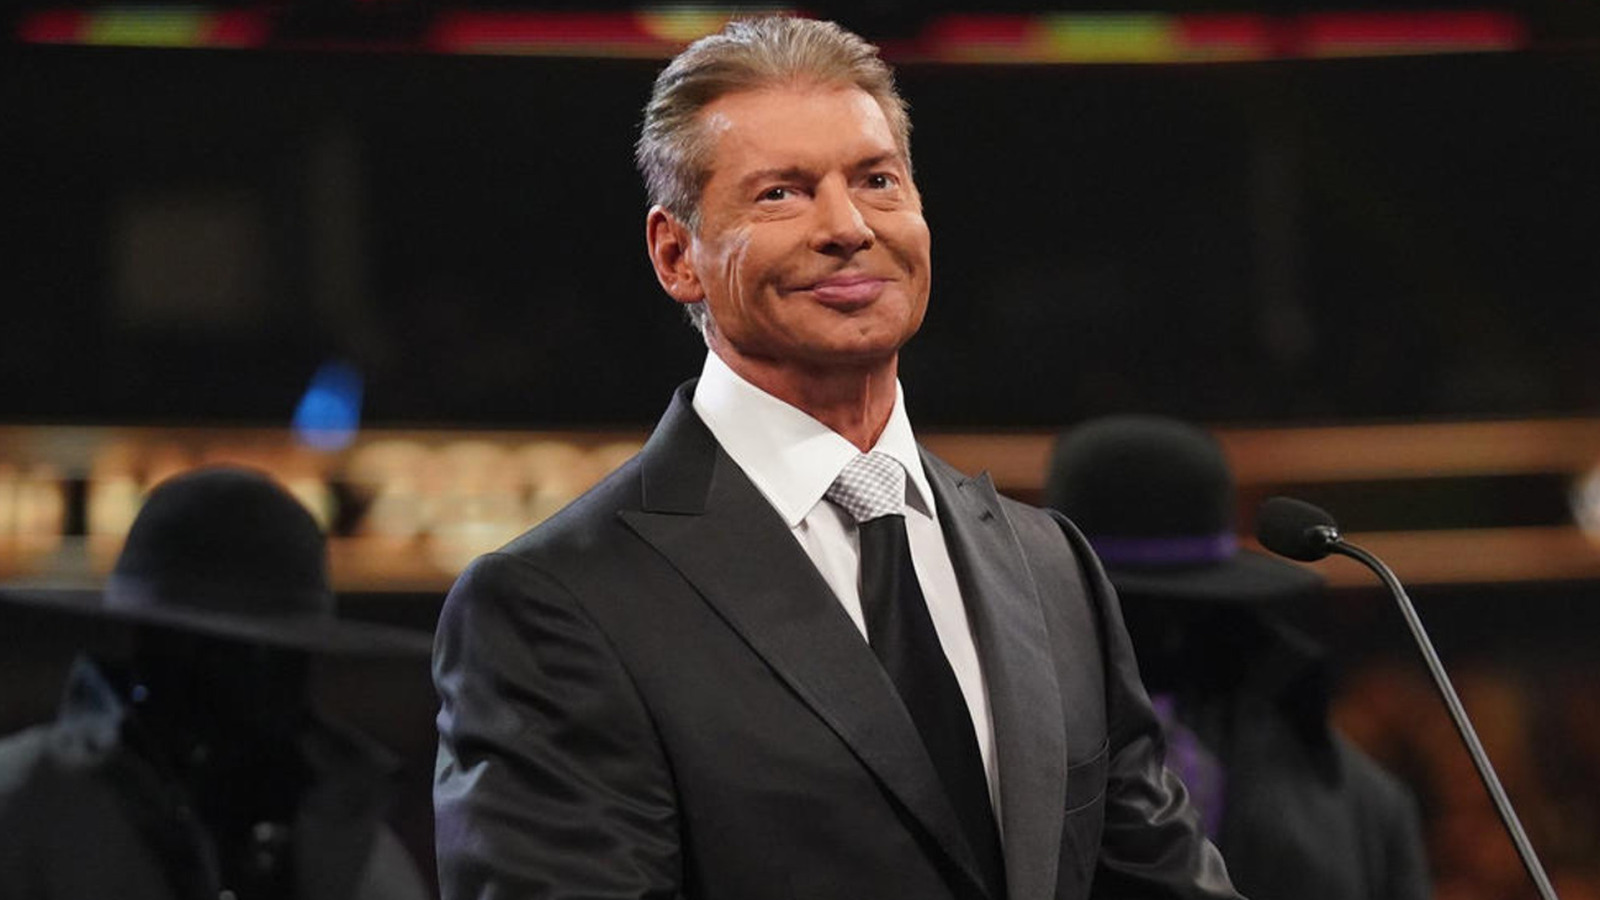 Mace habla sobre la reacción detrás del escenario ante el retiro de la WWE de Vince McMahon en 2022